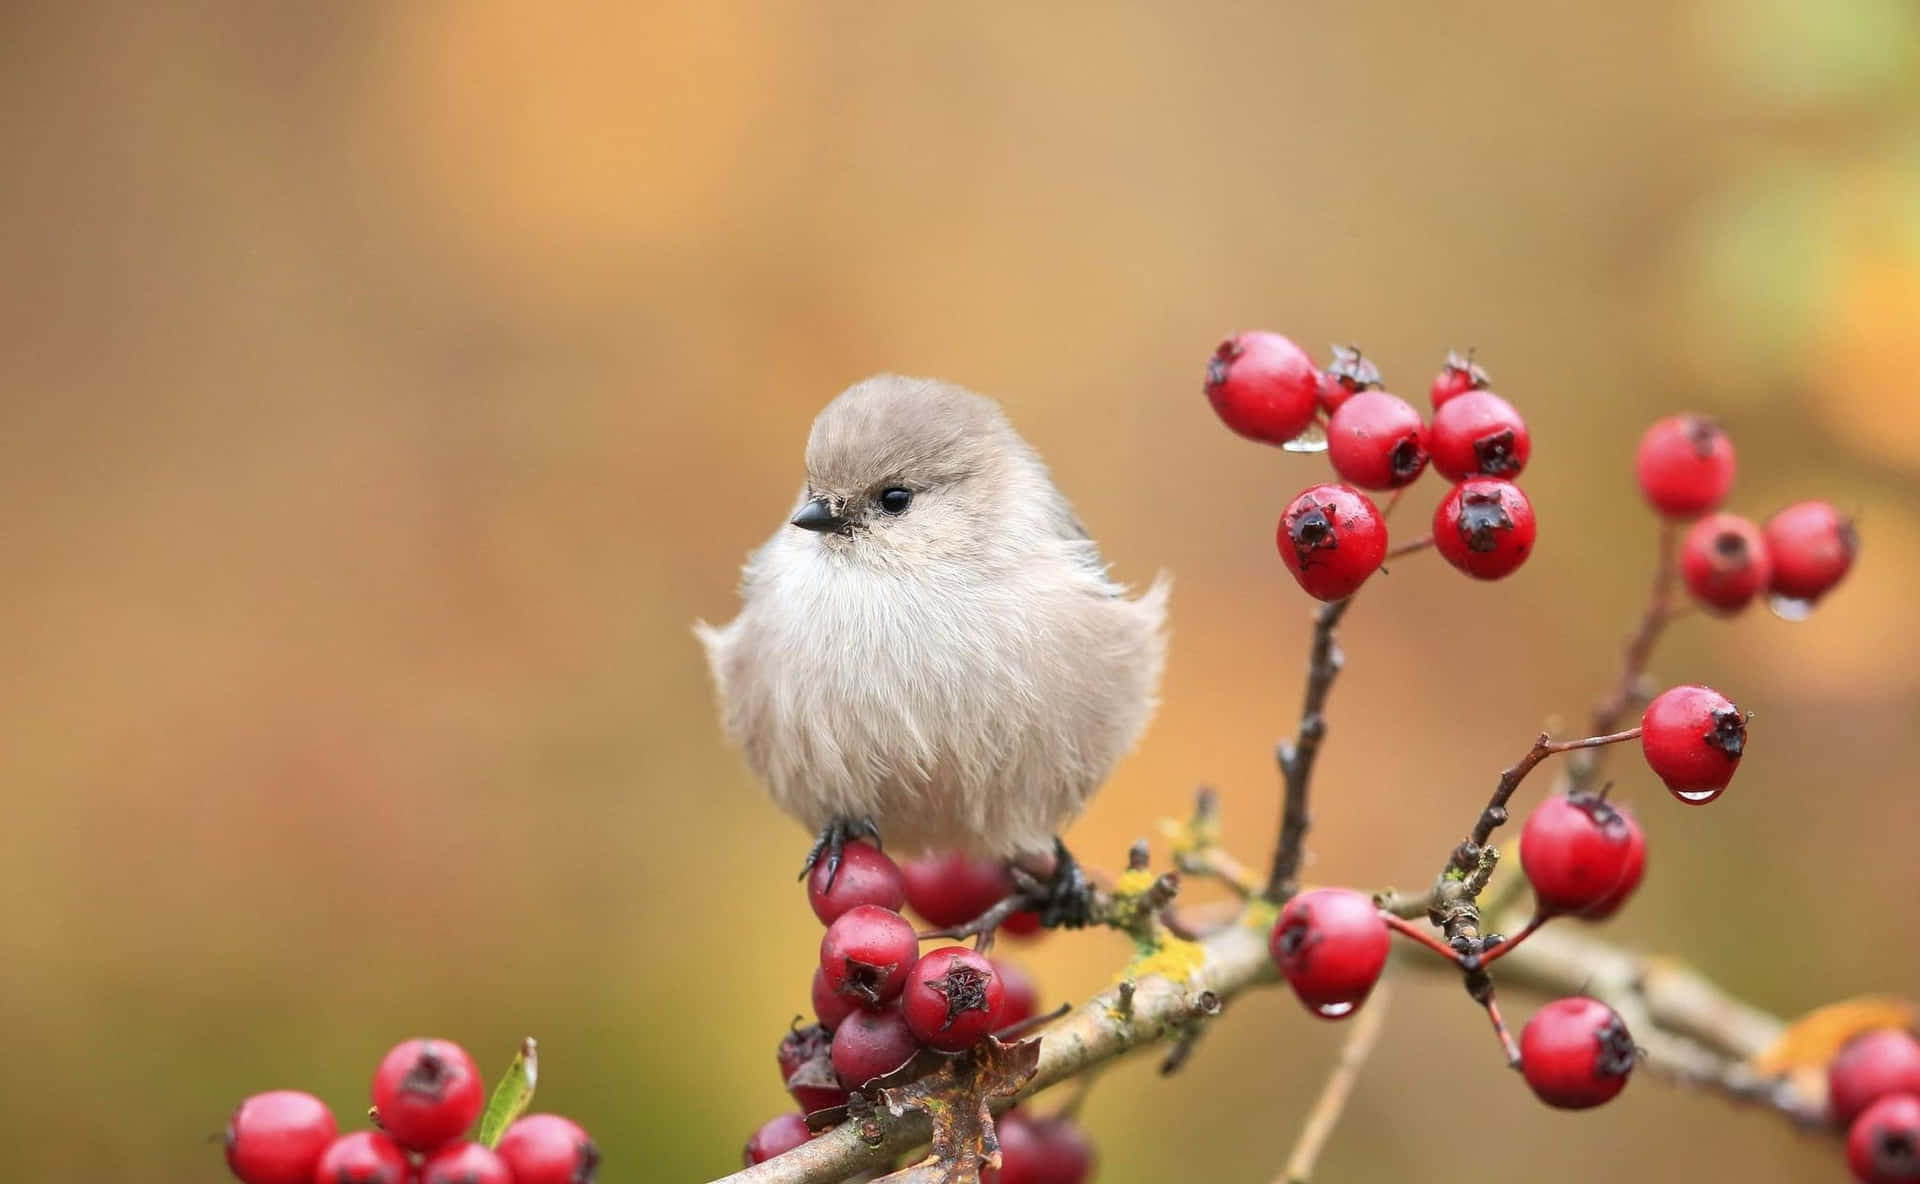 En lille fugl sidder på en gren med røde bær